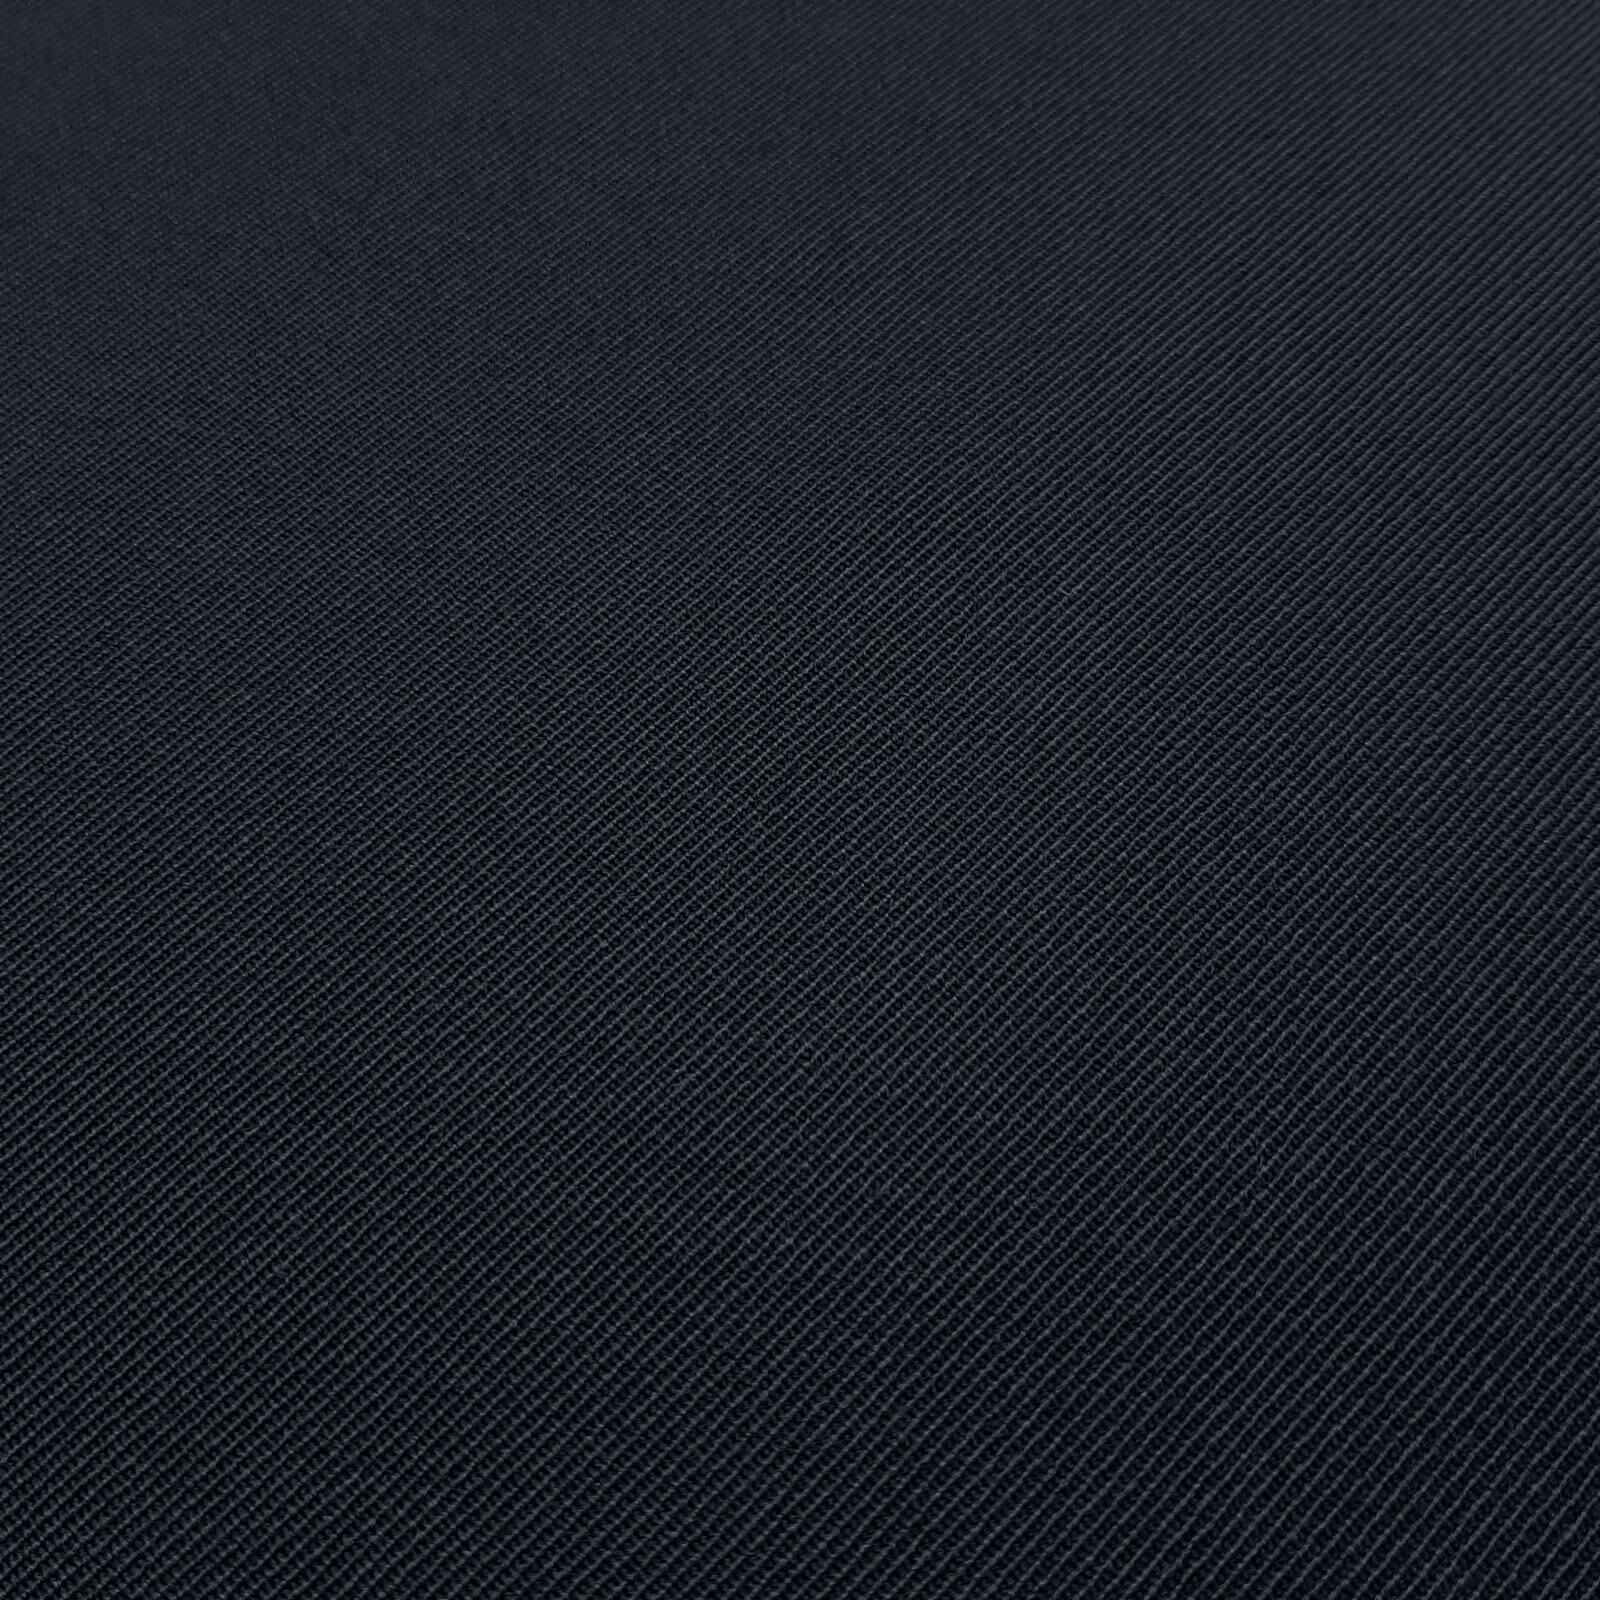 Franziska - paño de lana 100% lana virgen / paño de uniforme – Azul marino oscuro